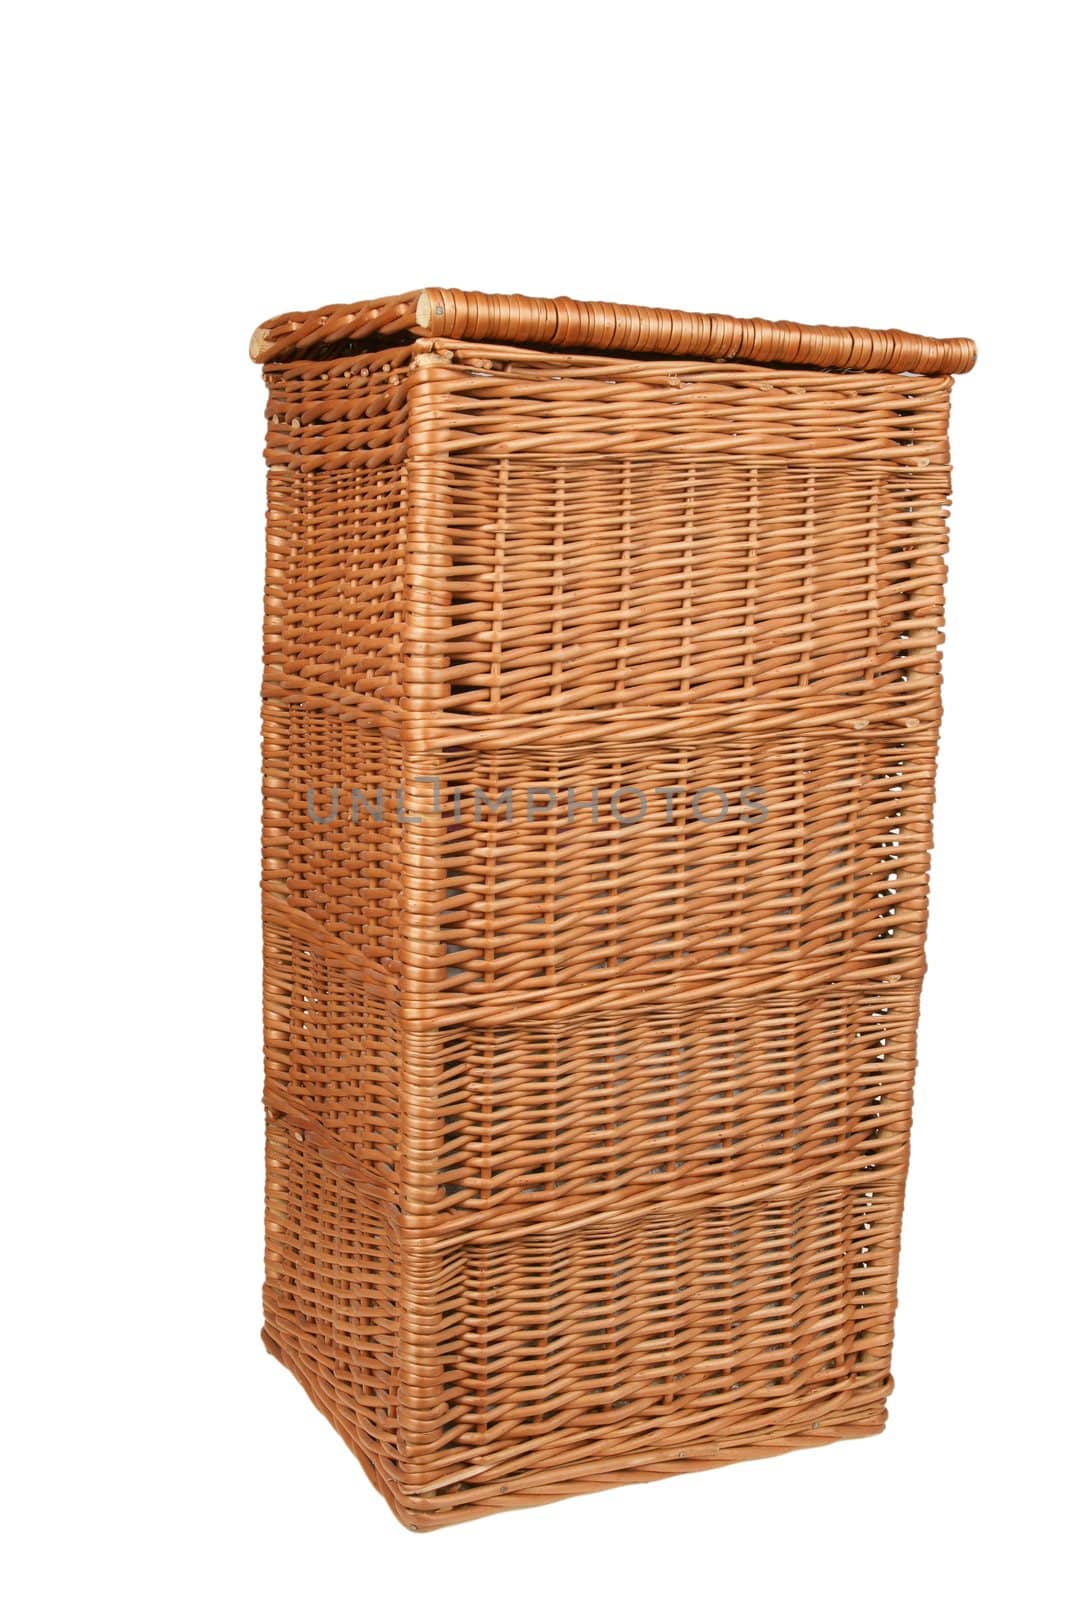 wicker basket by pixelman